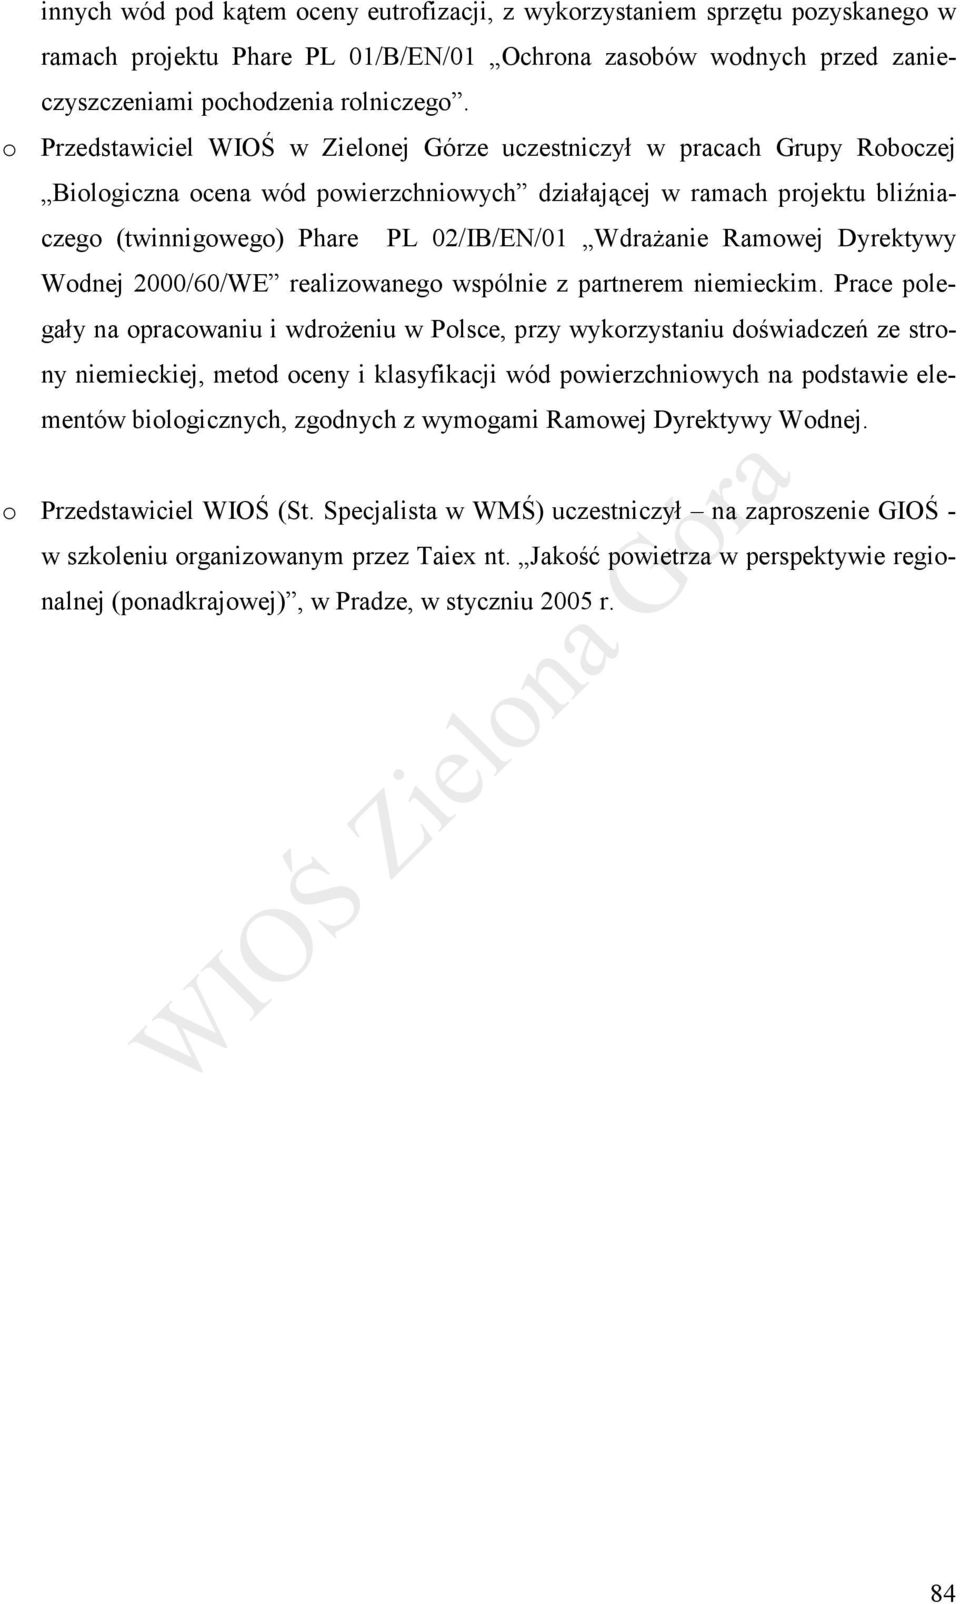 Wdrażanie Ramowej Dyrektywy Wodnej 2000/60/WE realizowanego wspólnie z partnerem niemieckim.